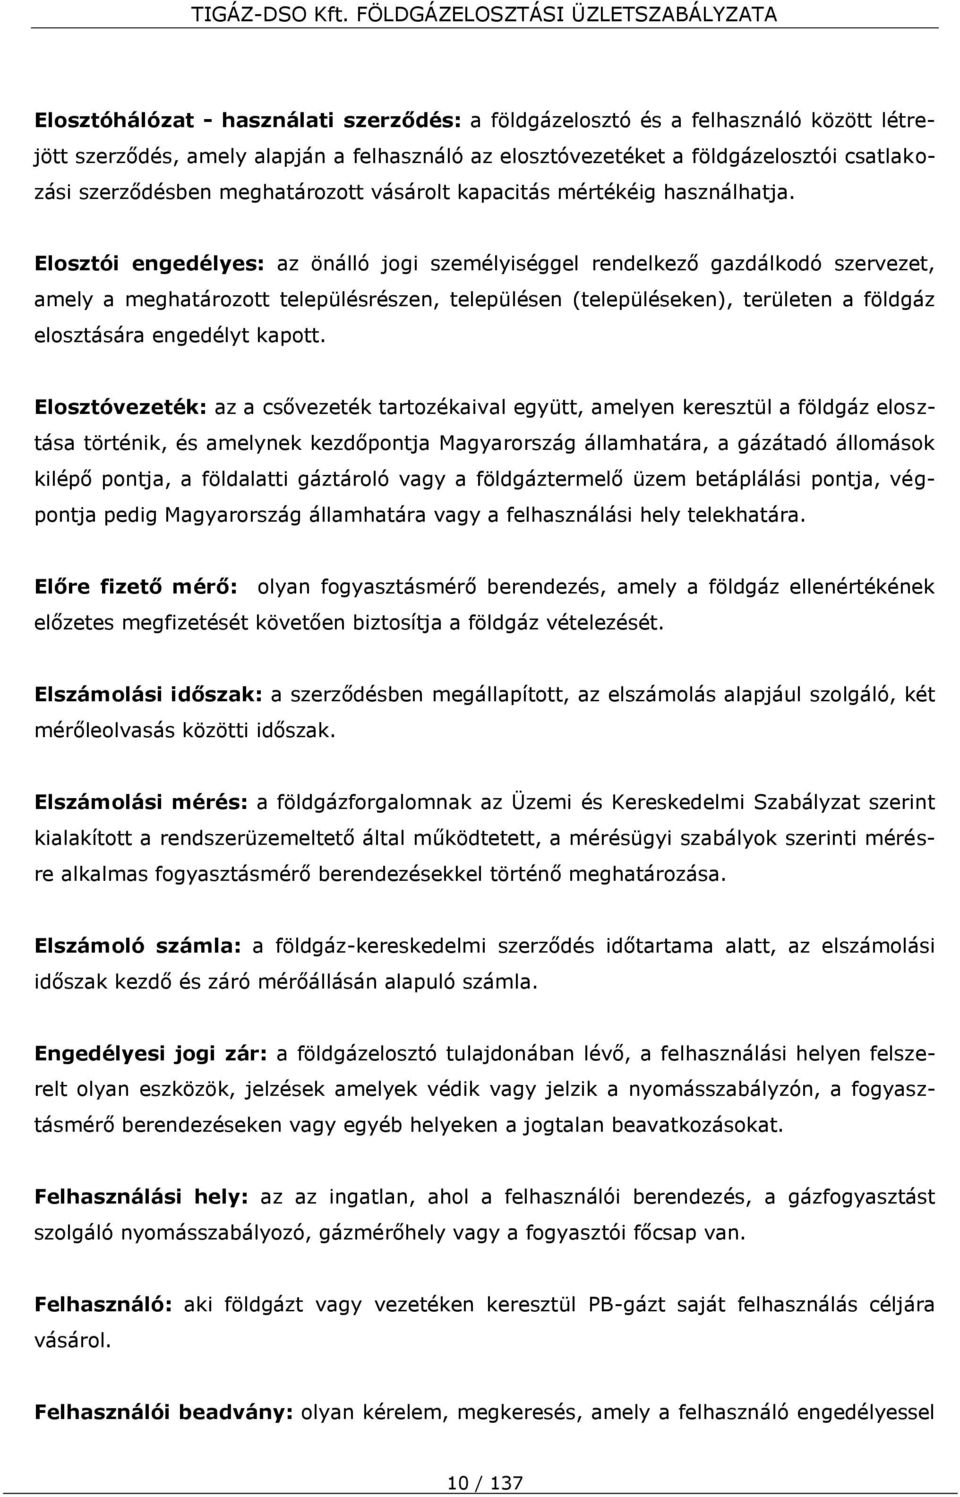 Elosztói engedélyes: az önálló jogi személyiséggel rendelkező gazdálkodó szervezet, amely a meghatározott településrészen, településen (településeken), területen a földgáz elosztására engedélyt